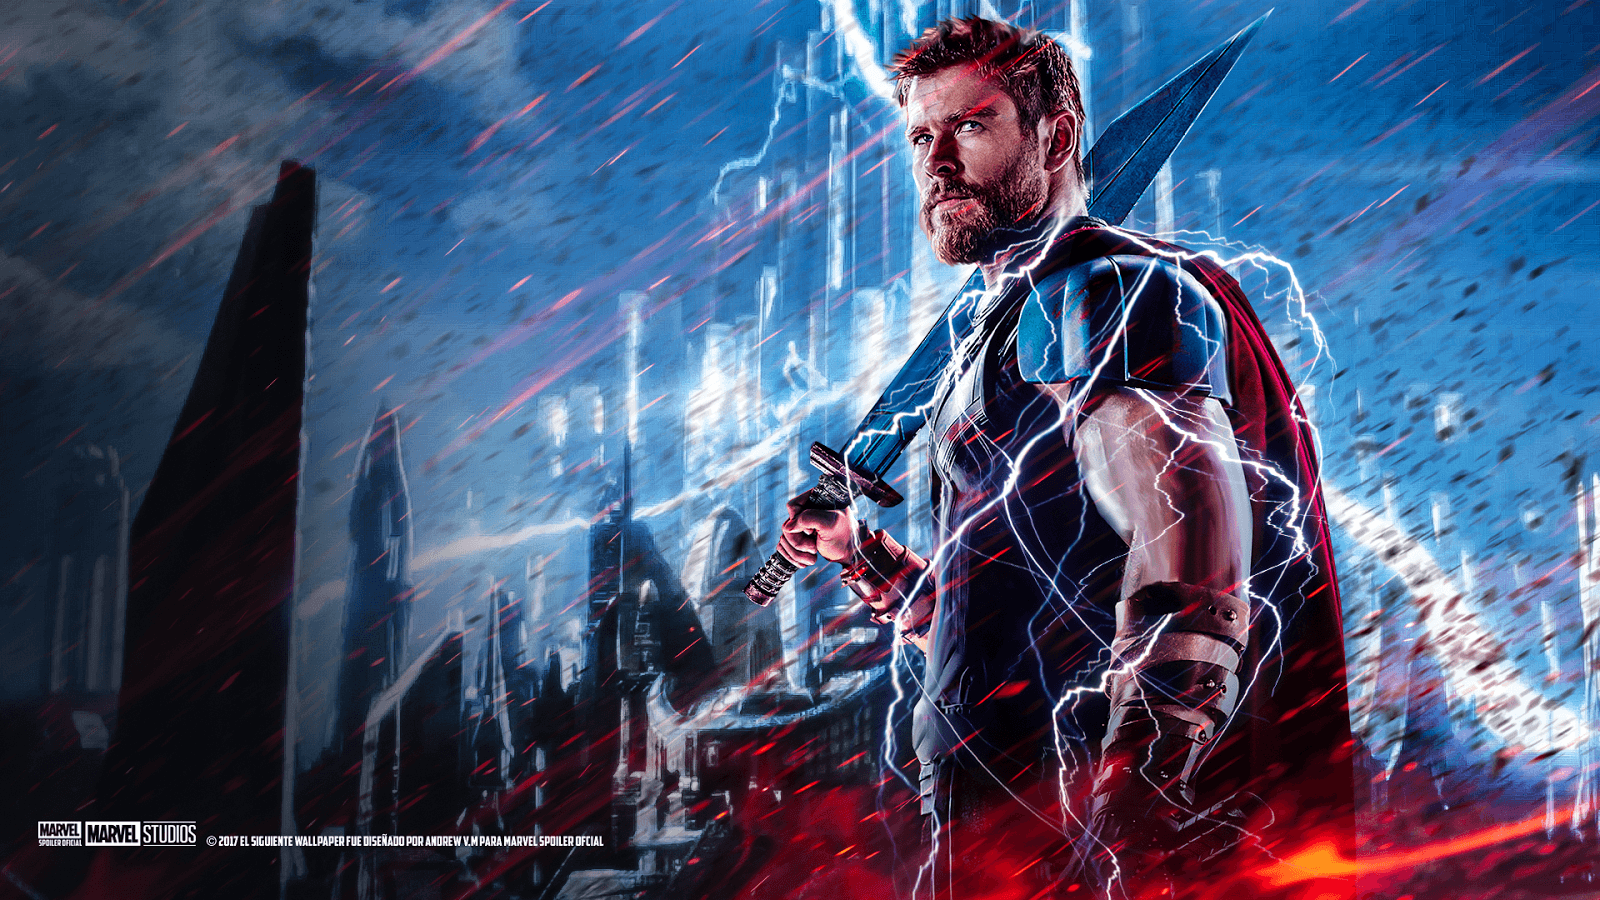 Thor Ragnarok Movie Cast Poster 2017, Full HD 2K Wallpaper | Movie